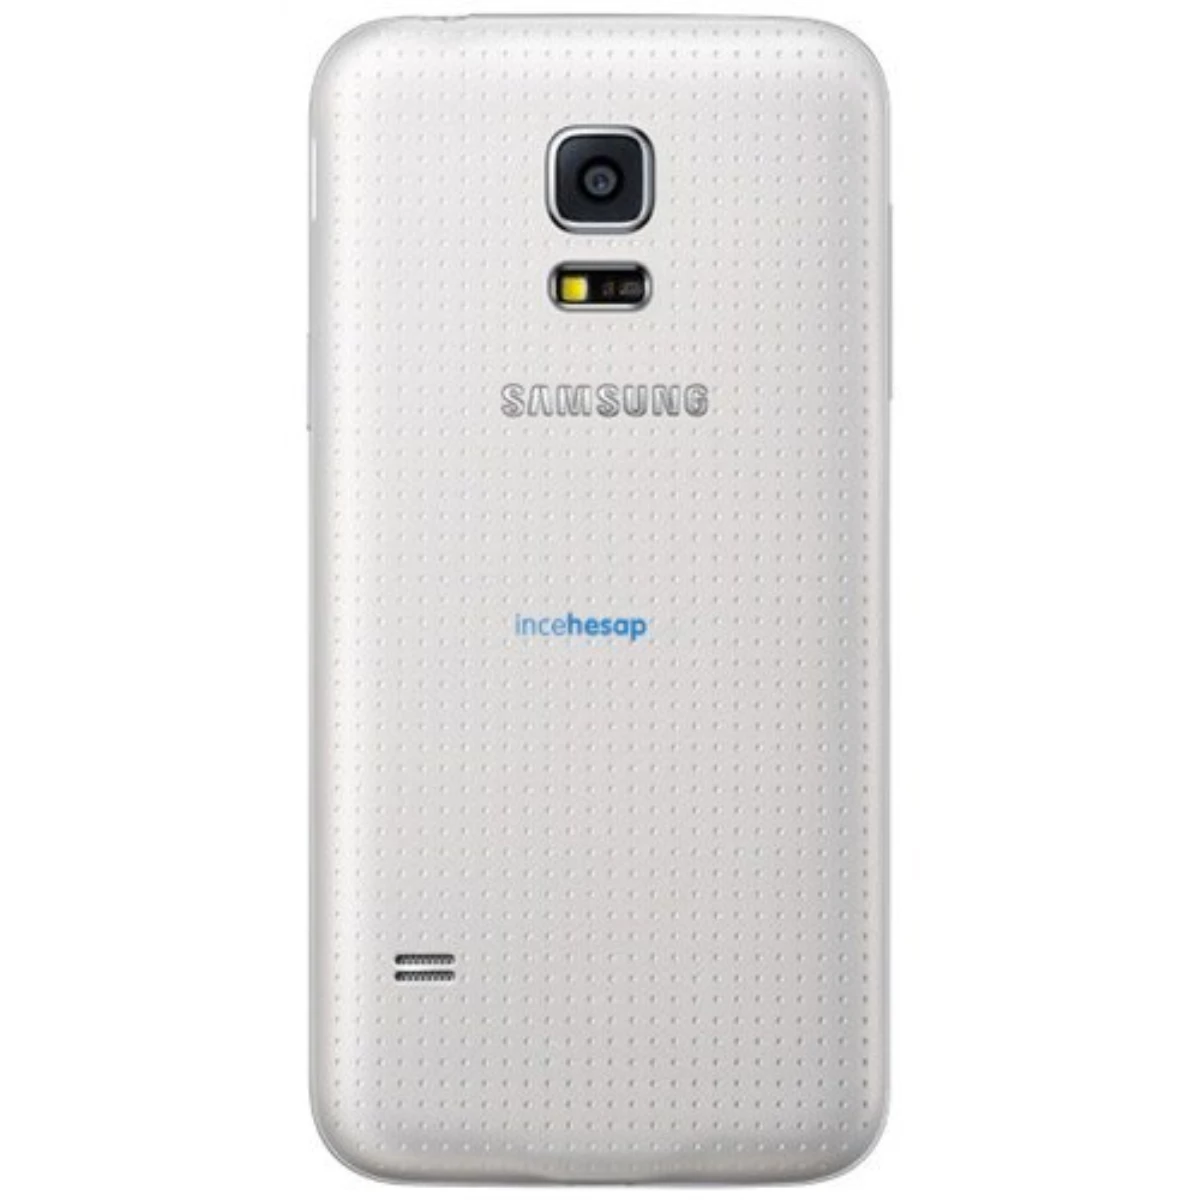 Samsung G800h Galaxy S5 Mini 16gb Beyaz Cep Telefonu